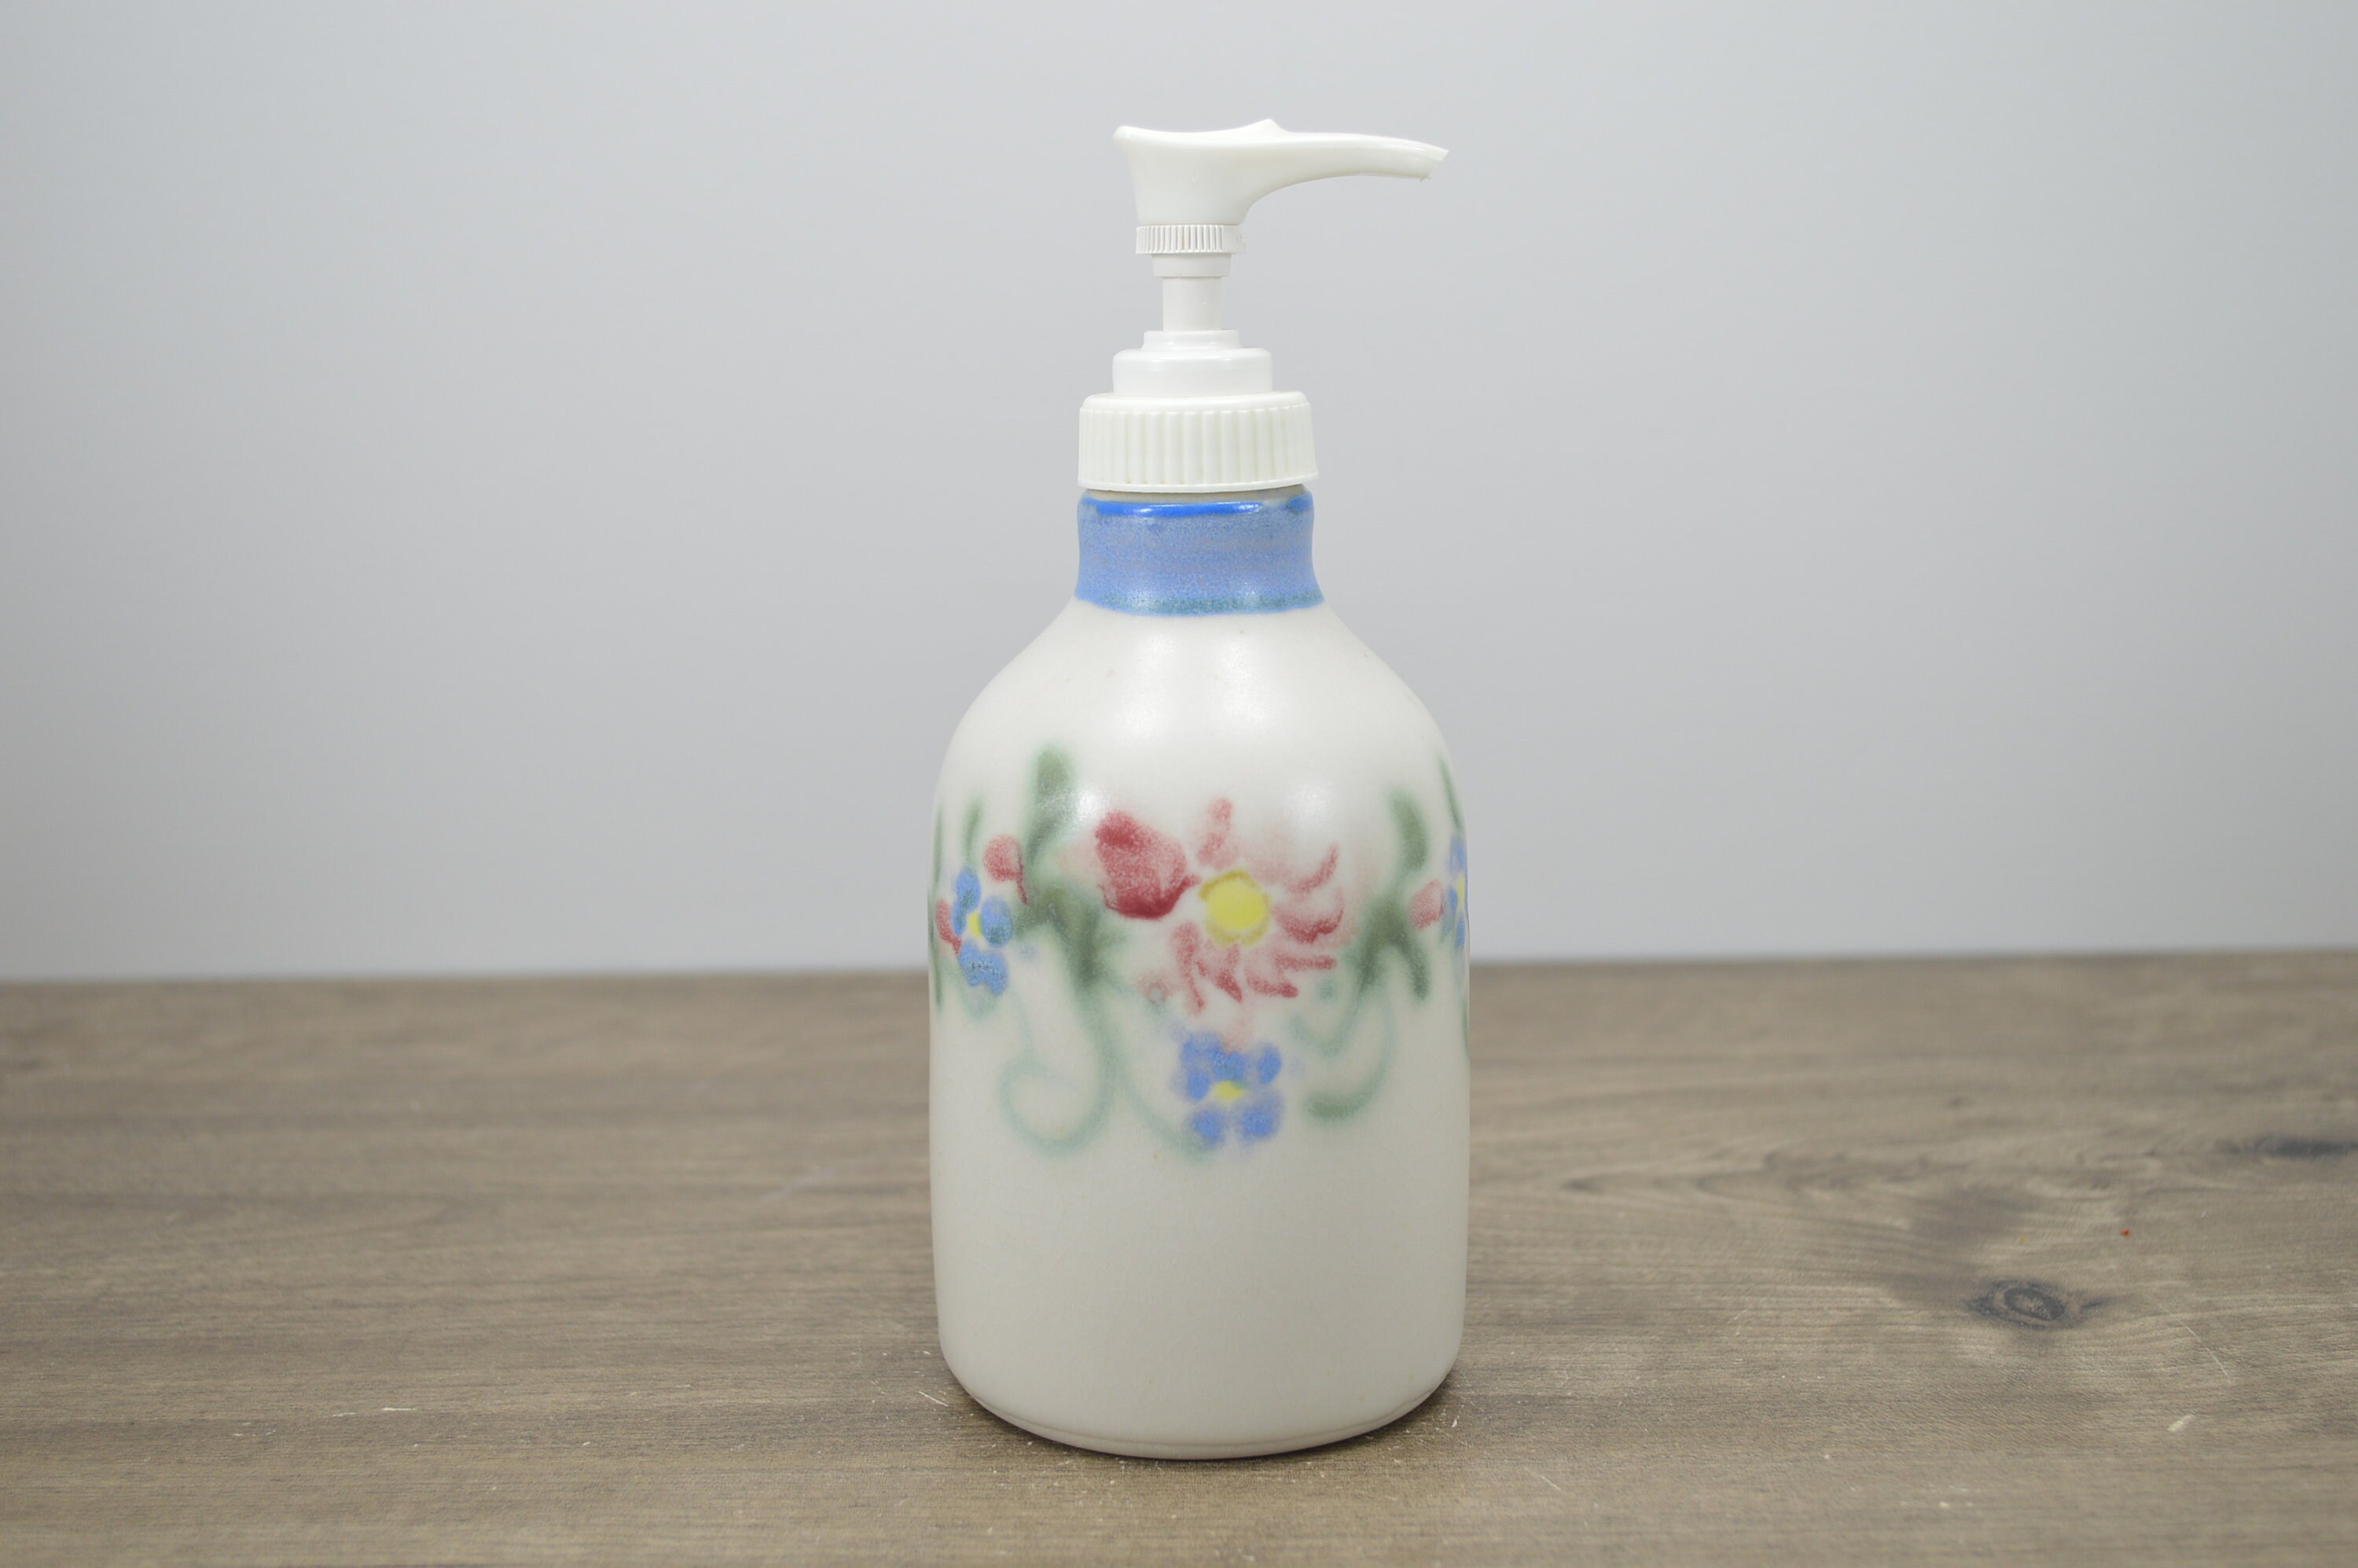 Otagiri White Milk Glass Hand Dispenser “Kitty” Liquid Soap Pump